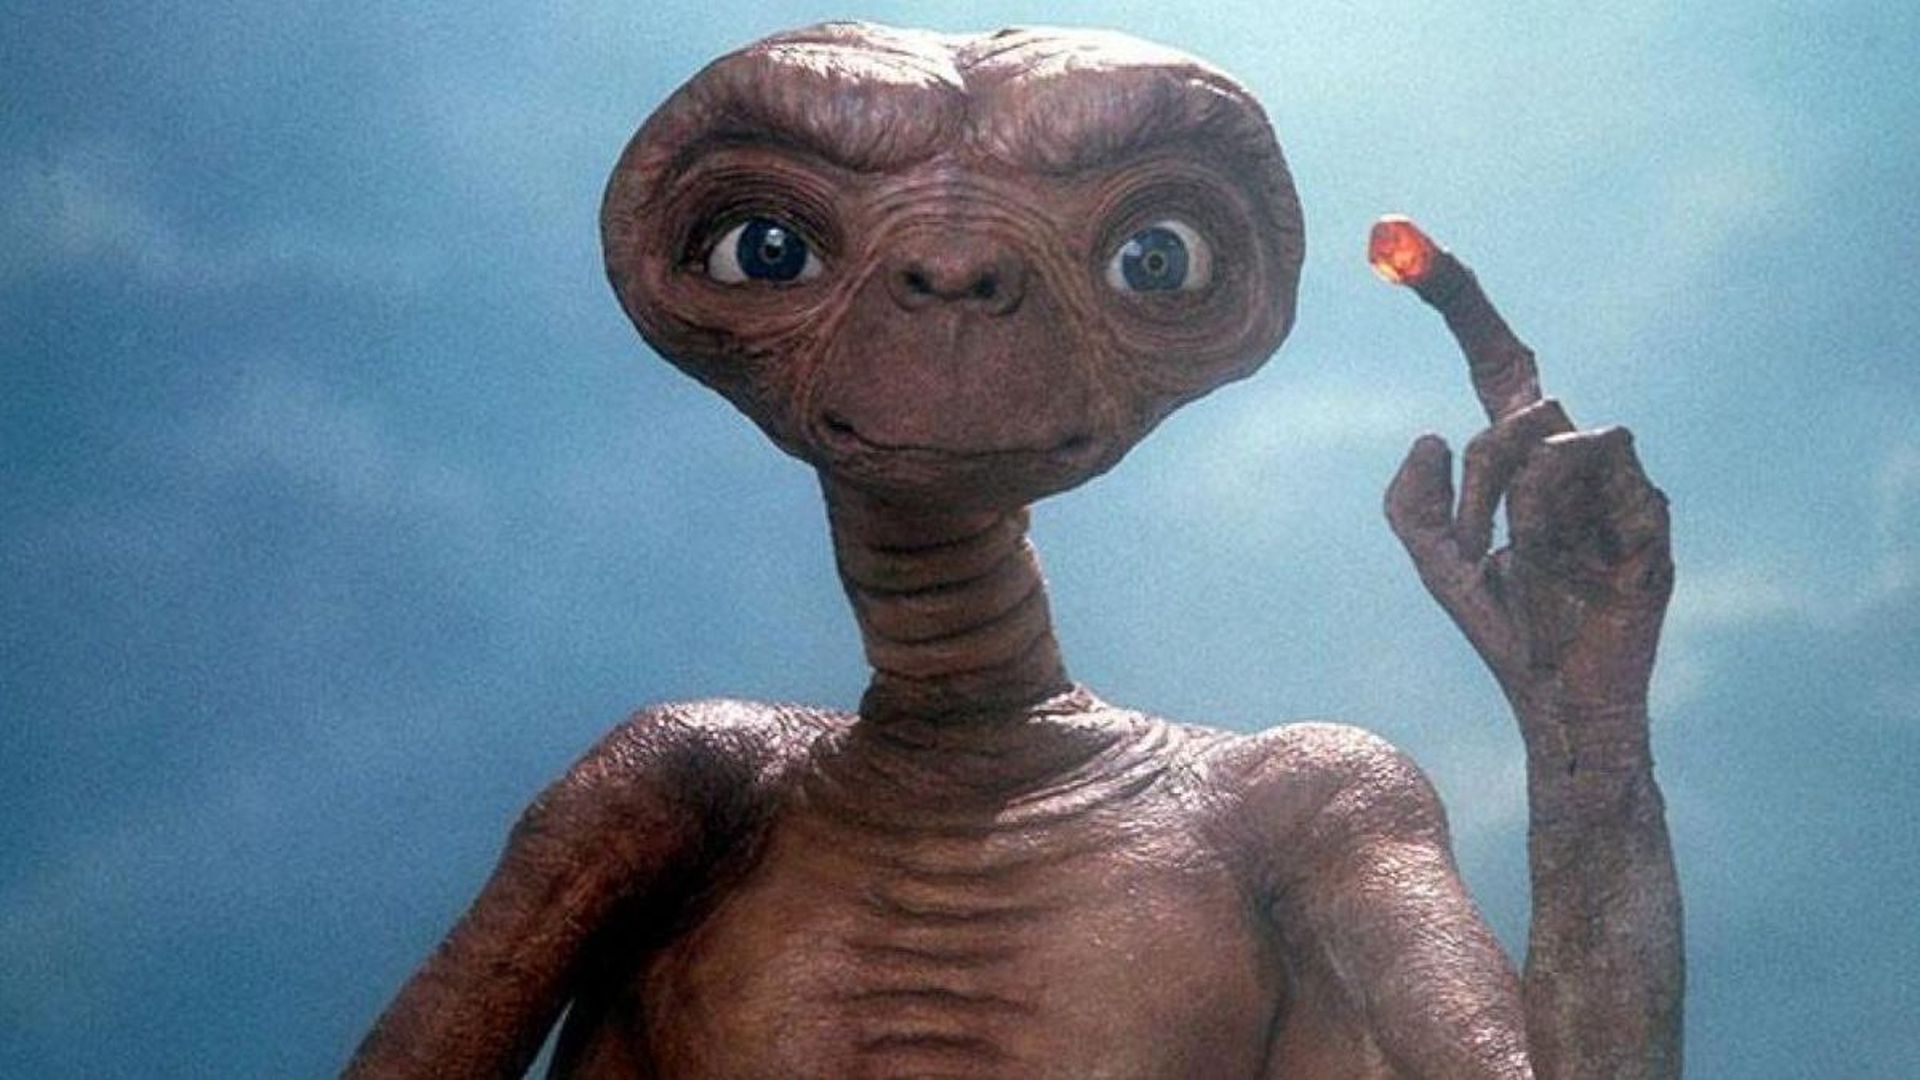 Arriverez-vous à reconnaître les 3 modèles qui ont servi pour réaliser E.T. ?